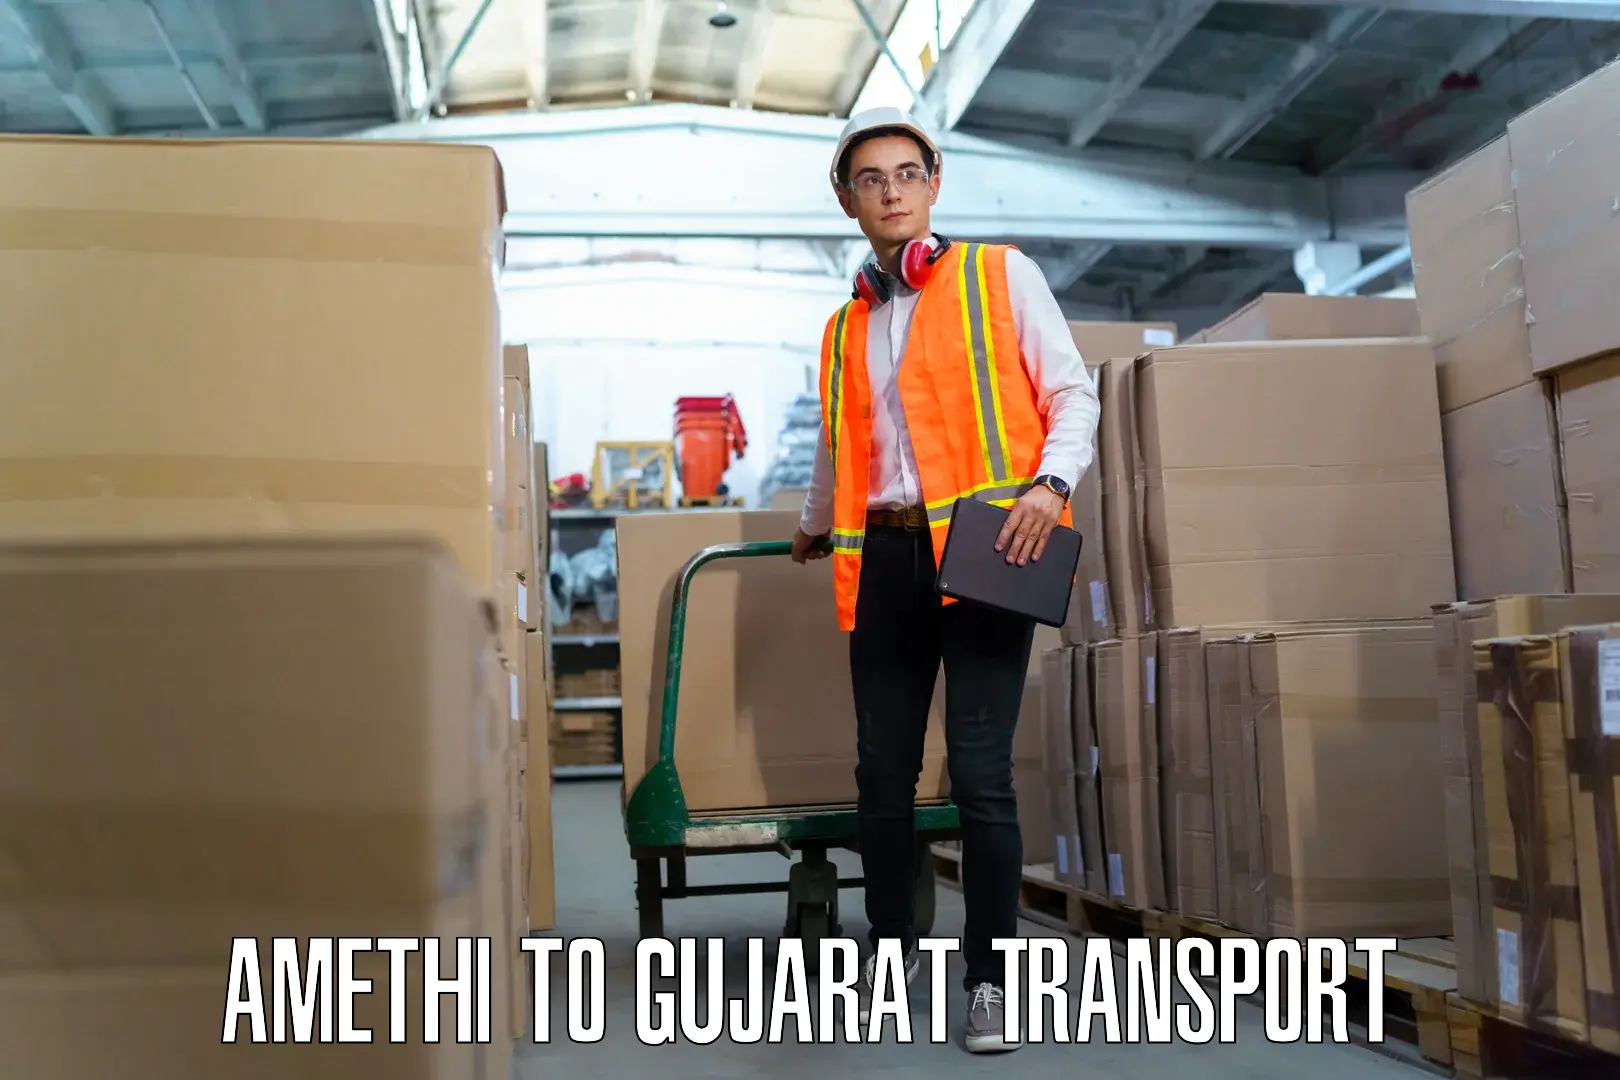 Daily transport service Amethi to Patan Gujarat